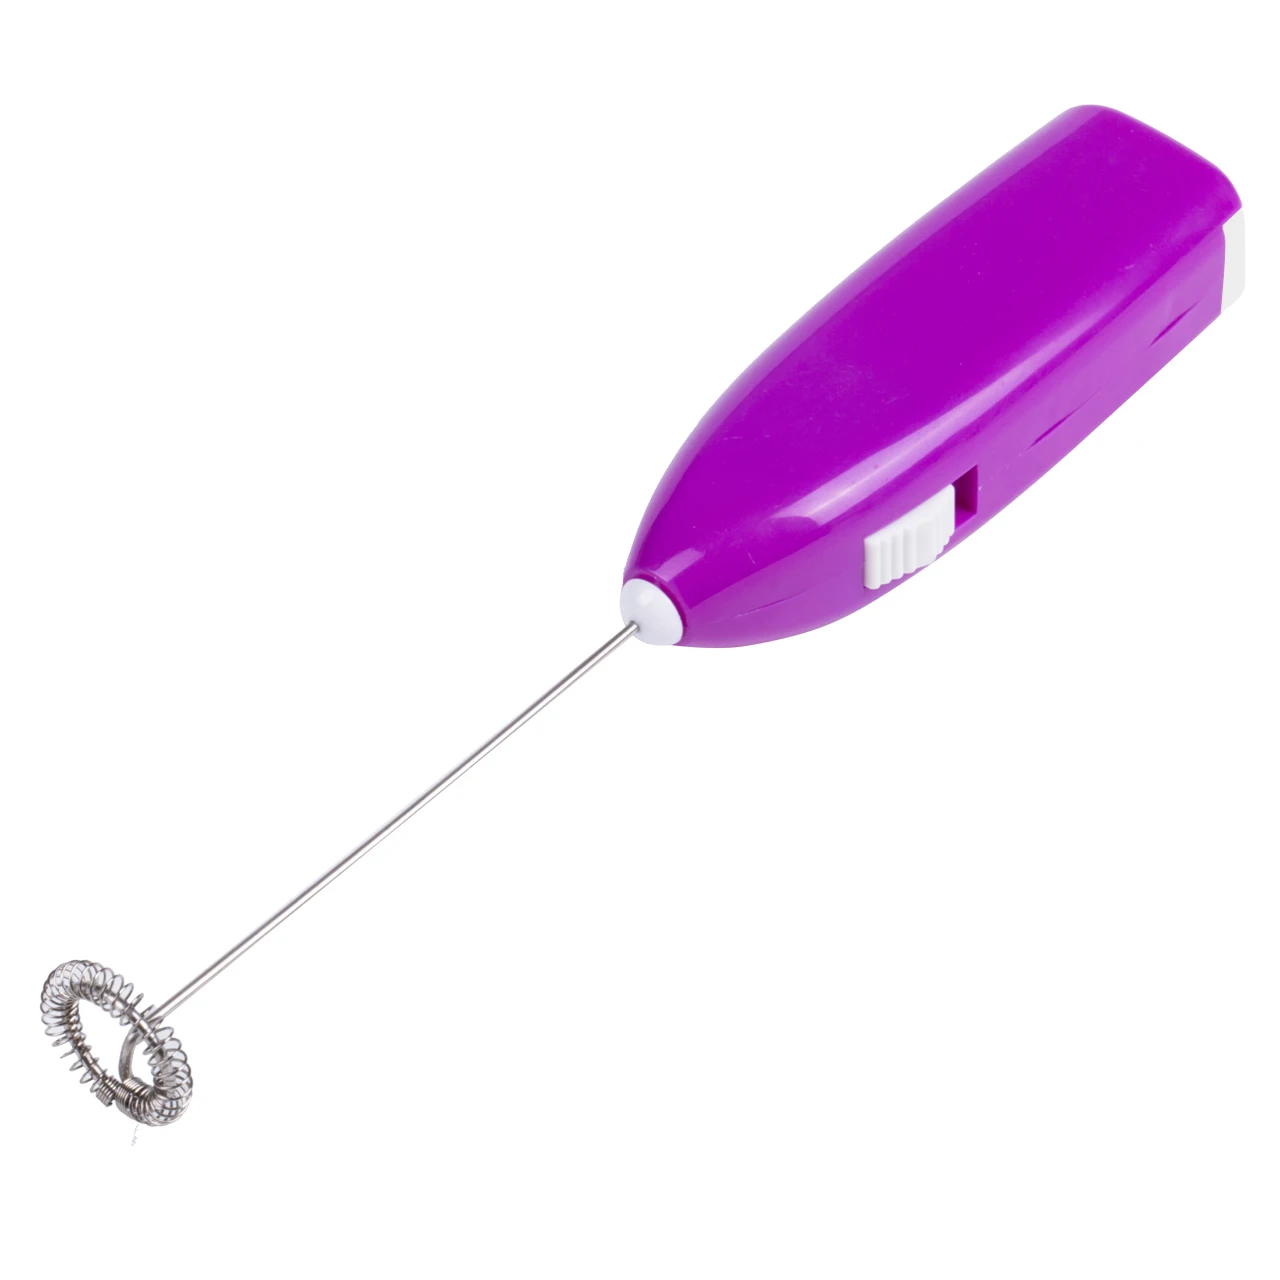 Мини-мешалка практичные кухонные Инструмент молочный напиток мутовка для кофе миксер Электрический взбиватель яиц пенообразователь - Цвет: Фиолетовый